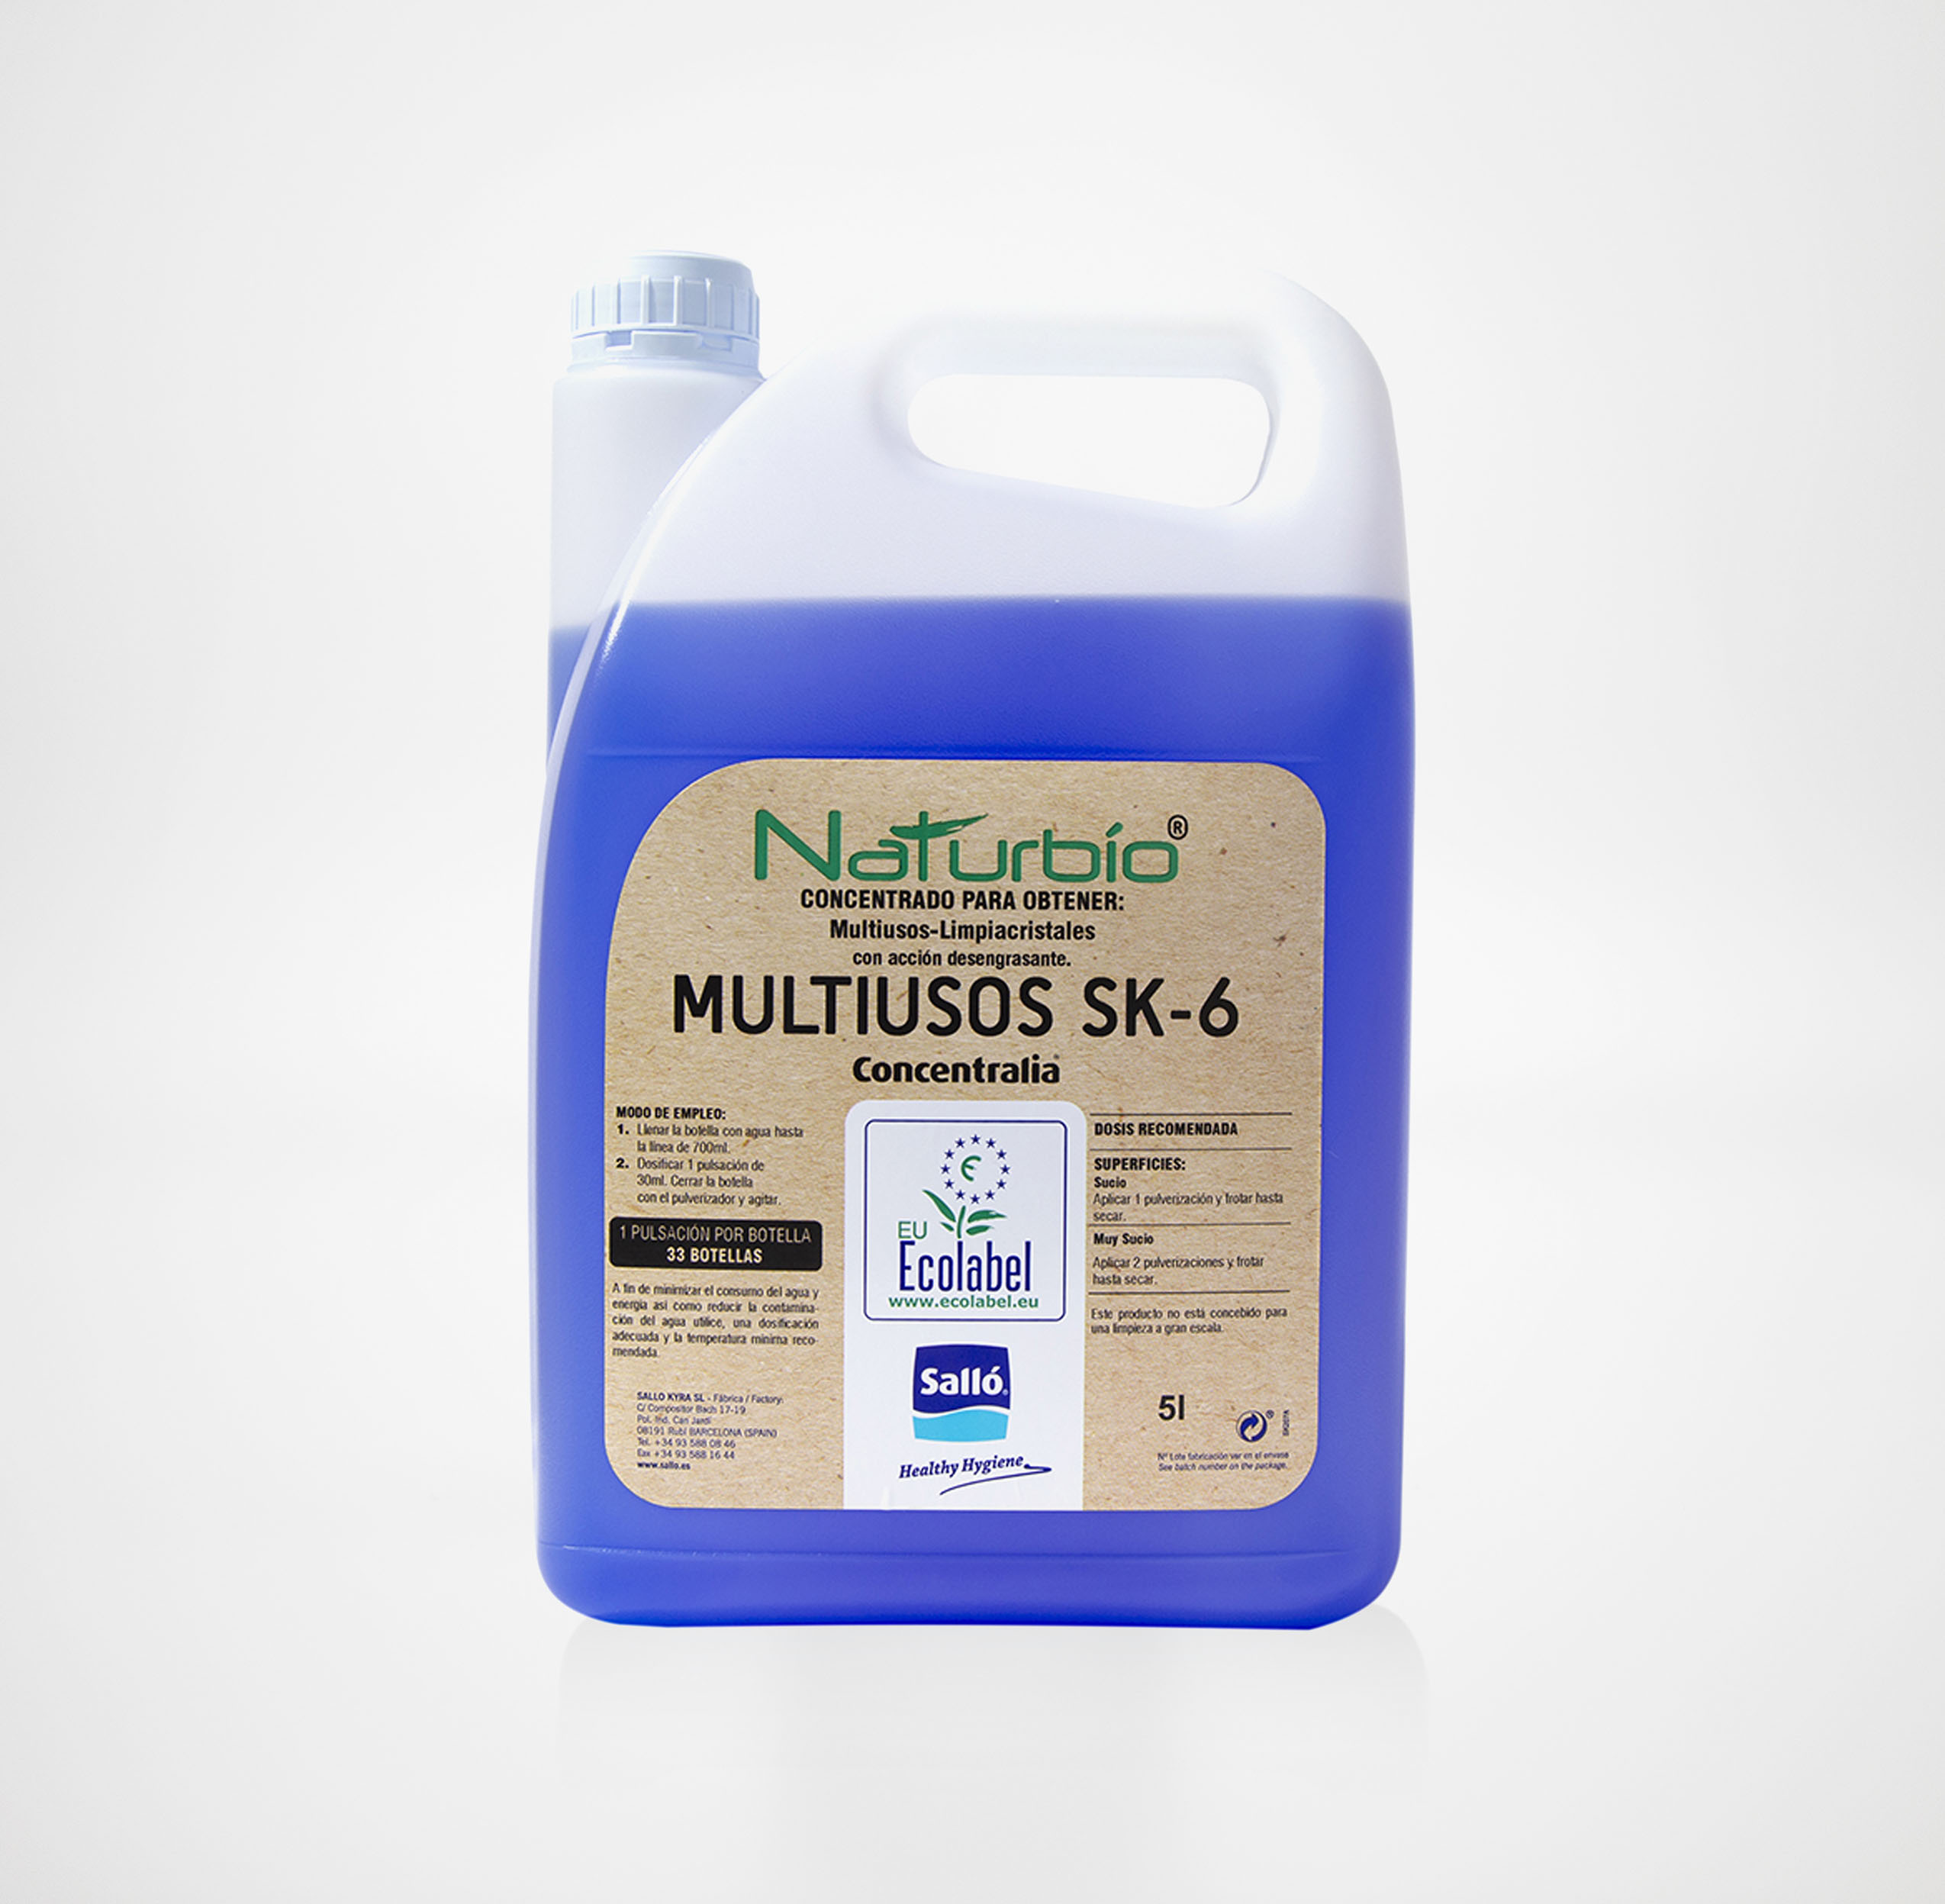 Limpiador multiusos ecológico SK-6 Concentralia® Naturbío® 5 L – 49,00€ –  DOSI®